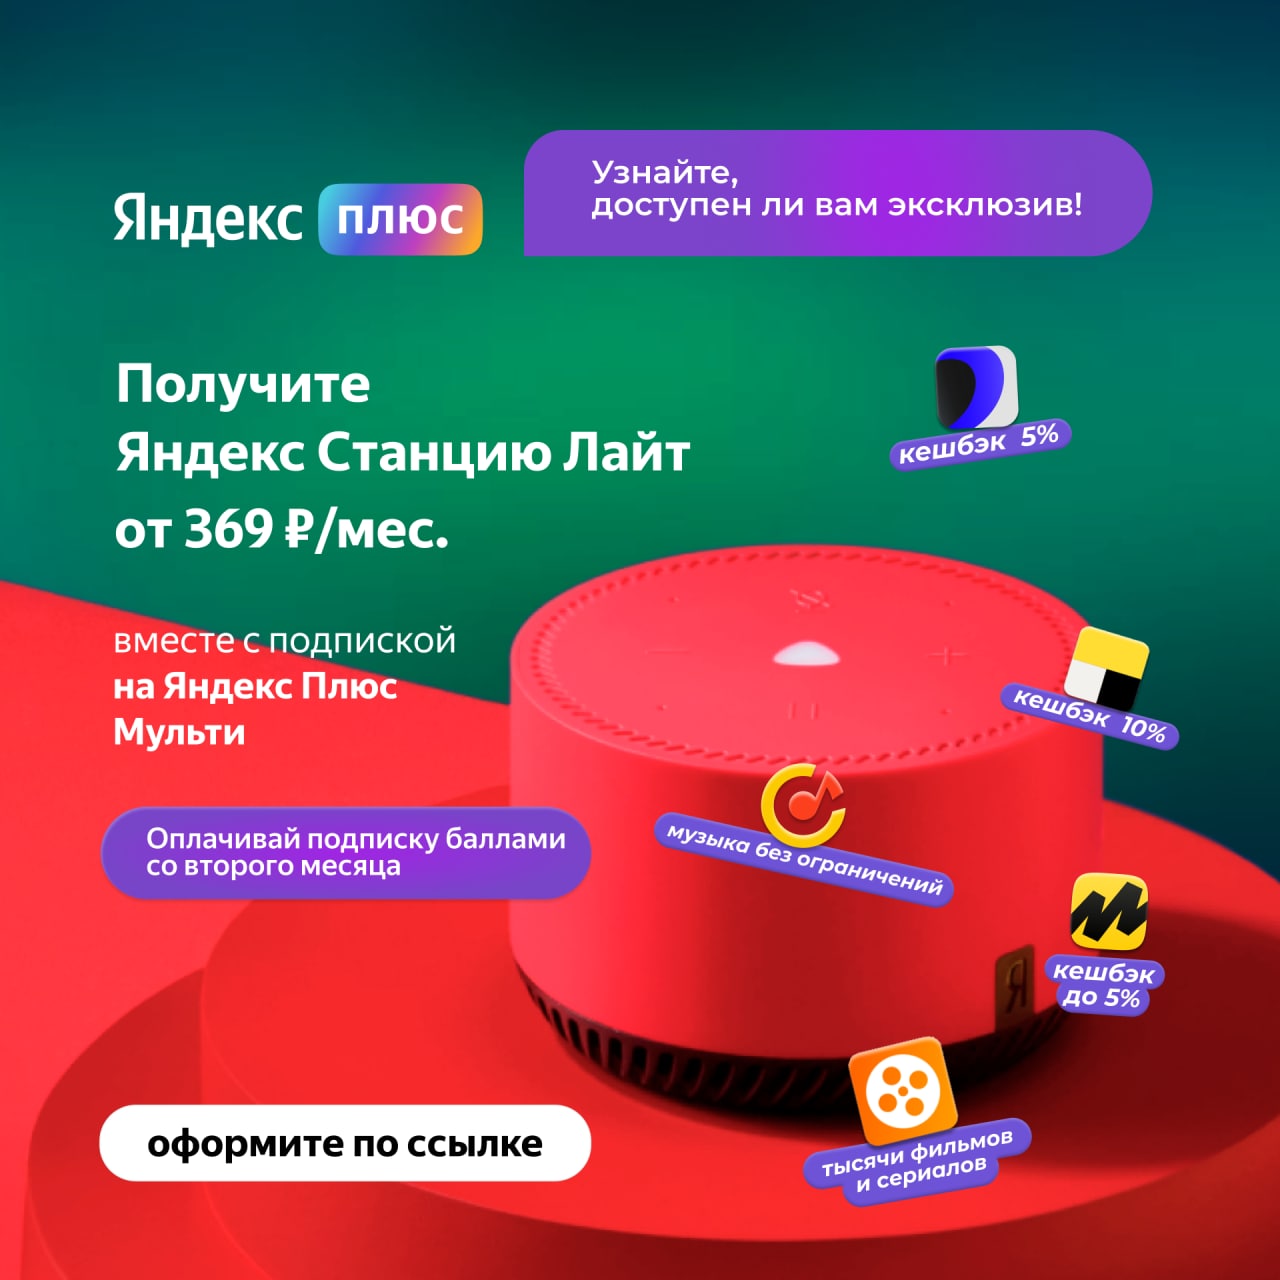 Яндекс плюс телеграмм подписка фото 5